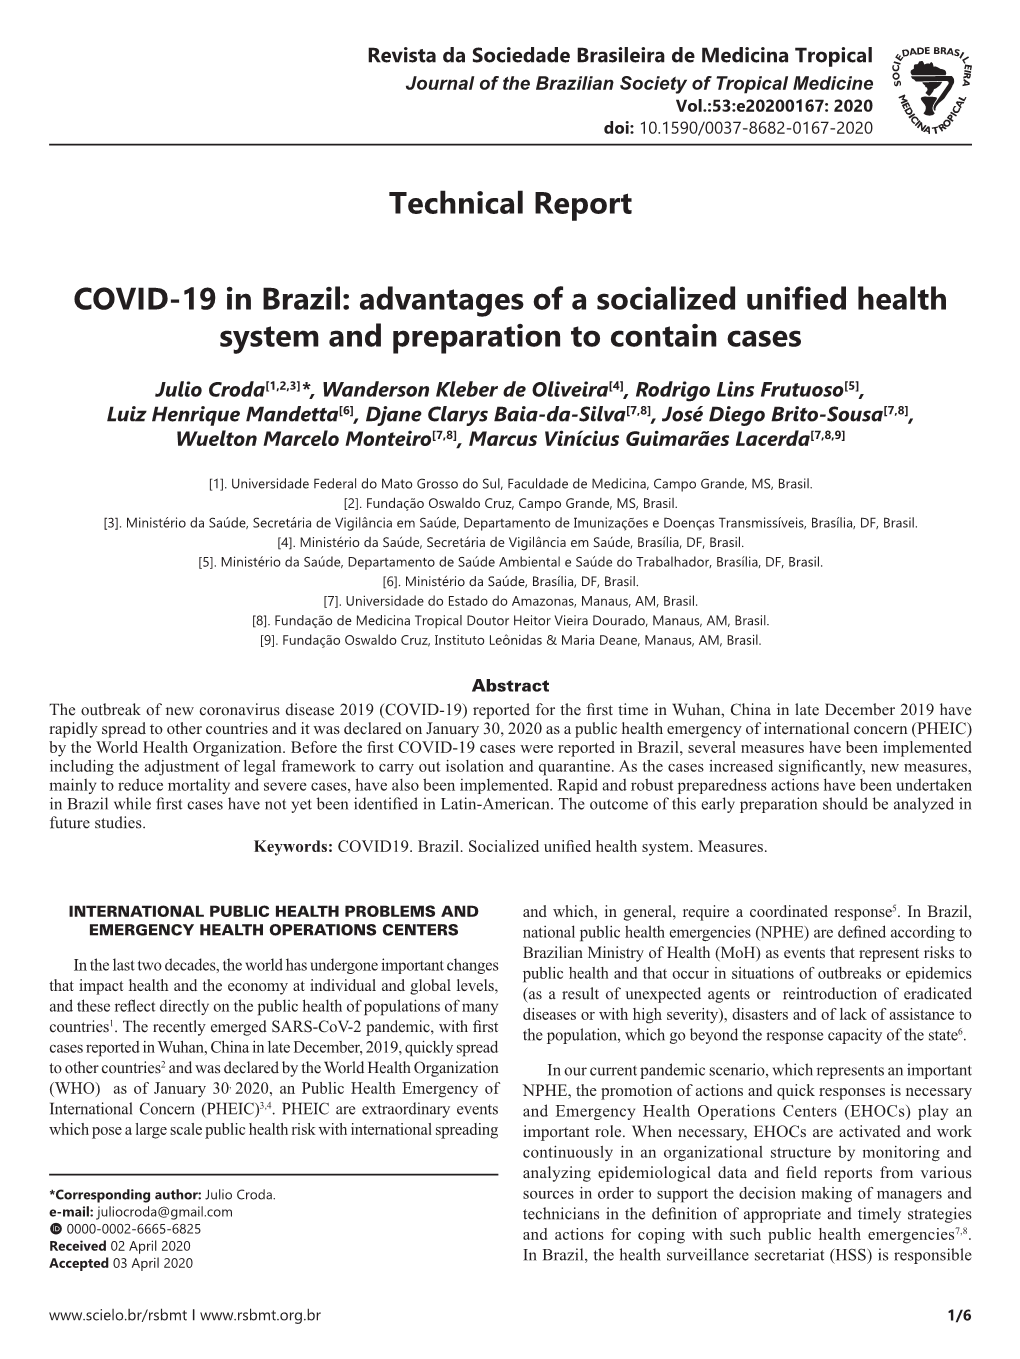 Technical Report COVID-19 in Brazil